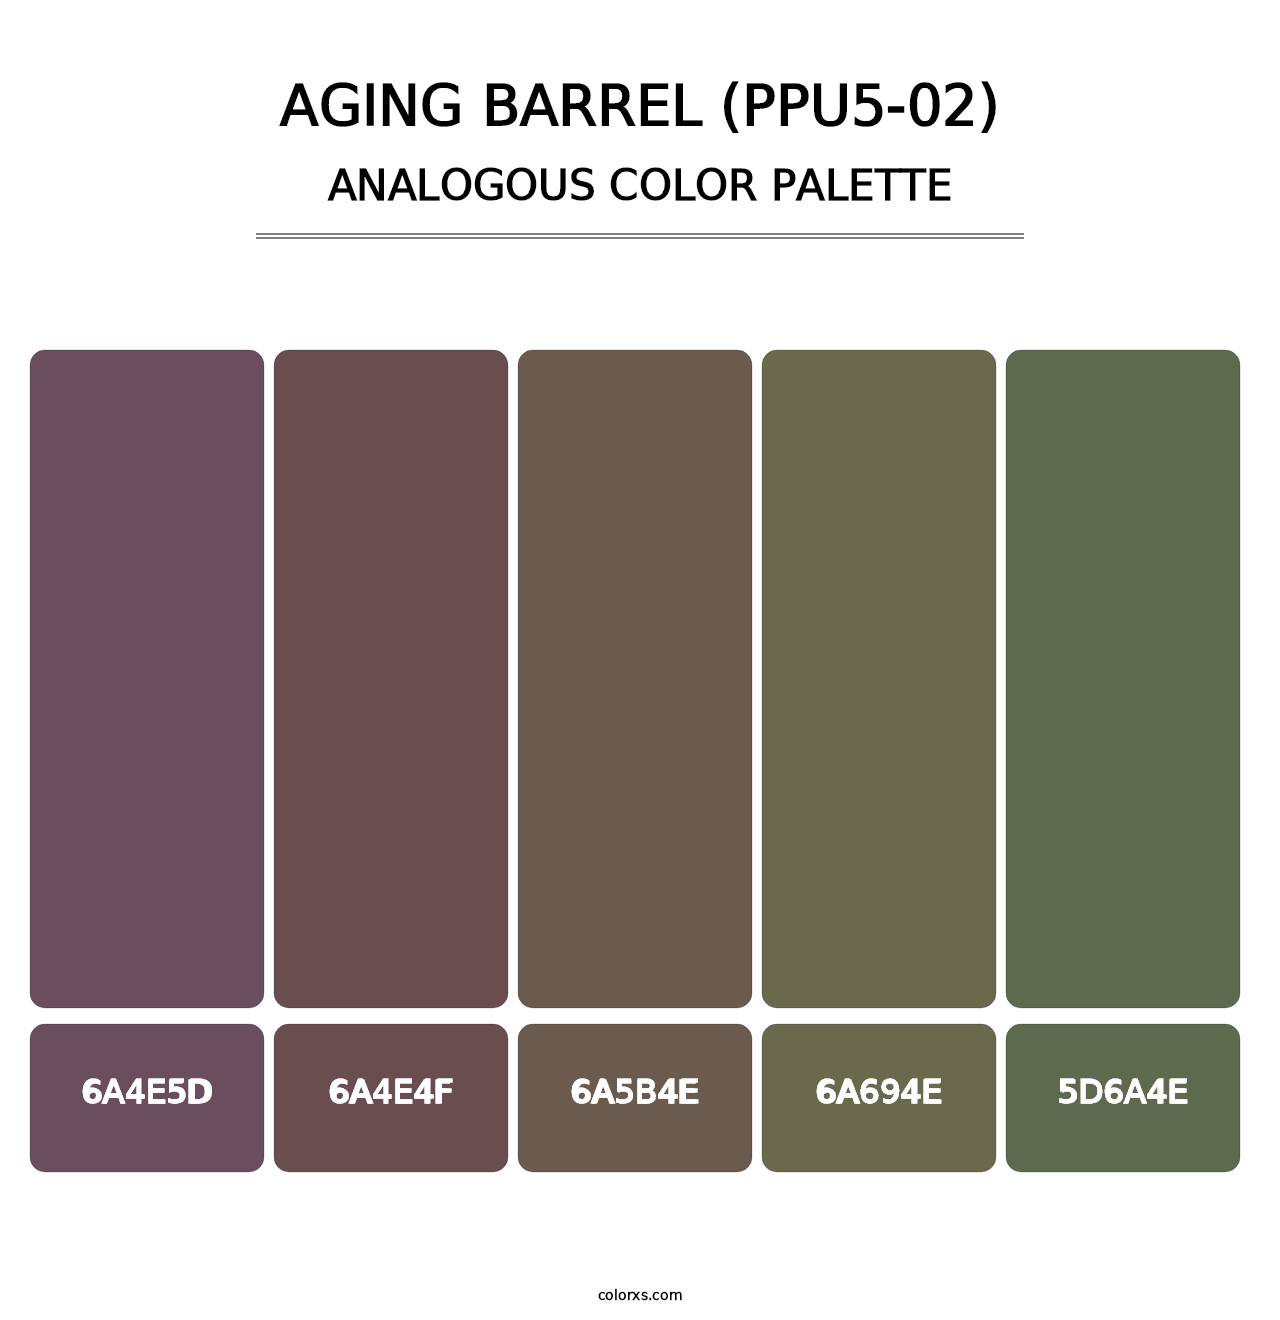 Aging Barrel (PPU5-02) - Analogous Color Palette